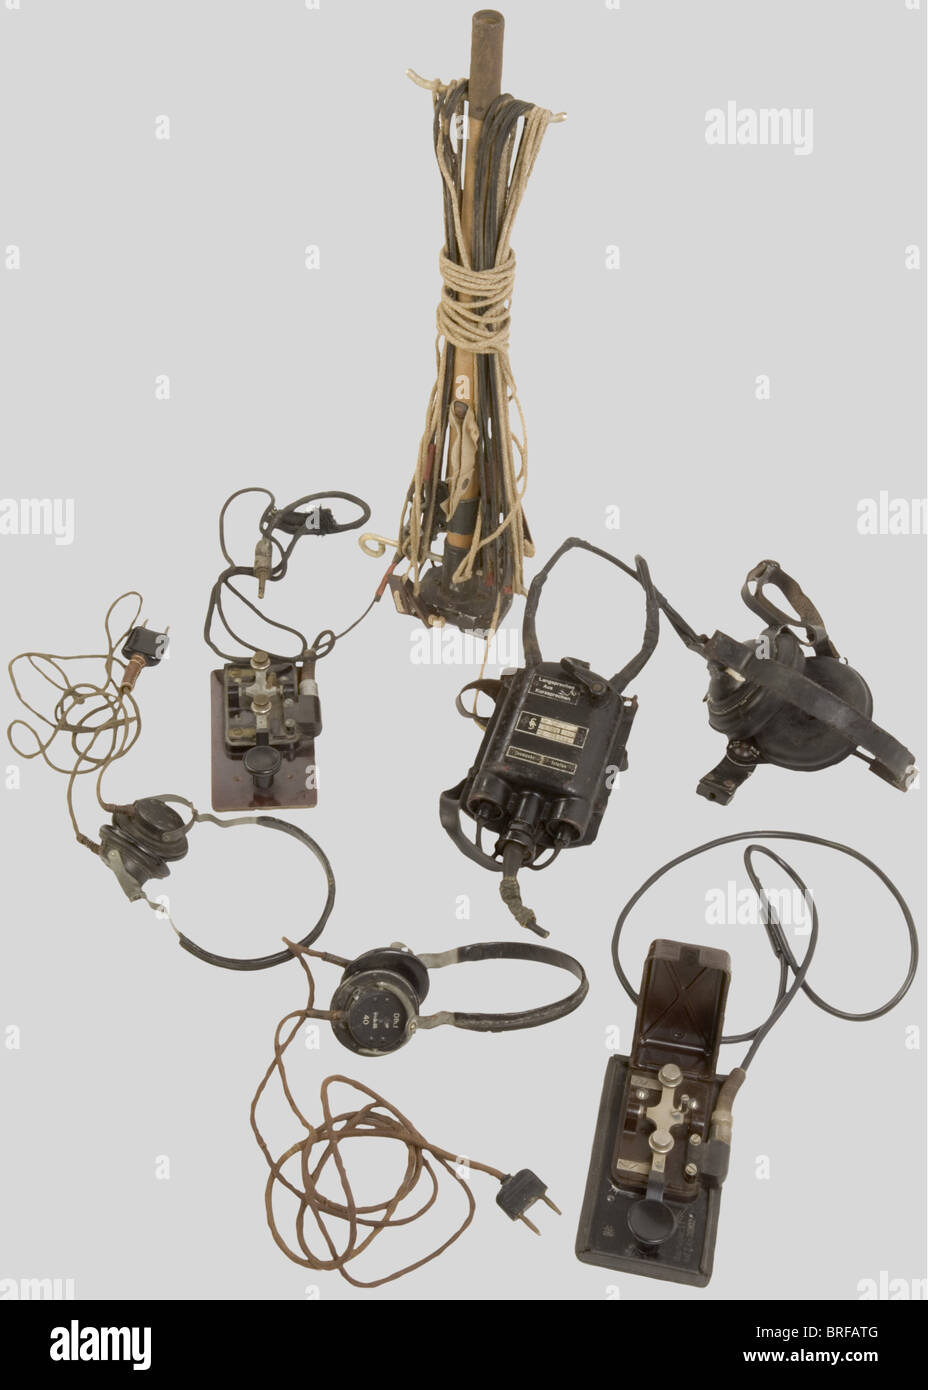 Un gruppo di apparecchiature radio Wehrmacht, compreso un palo radio di trasmissione/ricezione con antenna, in legno e alluminio grigio, completo di cavi e bollini di consegna. Due encoder morse in metallo con base in bachelite, uno senza coperchio, completo di cavi e spine/prese. Due set di cuffie complete di prese e cavi. Trasmettitore/ricevitore Siemens per artiglieria costiera, incluso casco largo, auricolari neri, cinghie di ritegno in pelle, fibbie metalliche, microfono mancante, custodia ventrale in metallo nero con cinghia di fissaggio, completo di pulsanti AN, Foto Stock